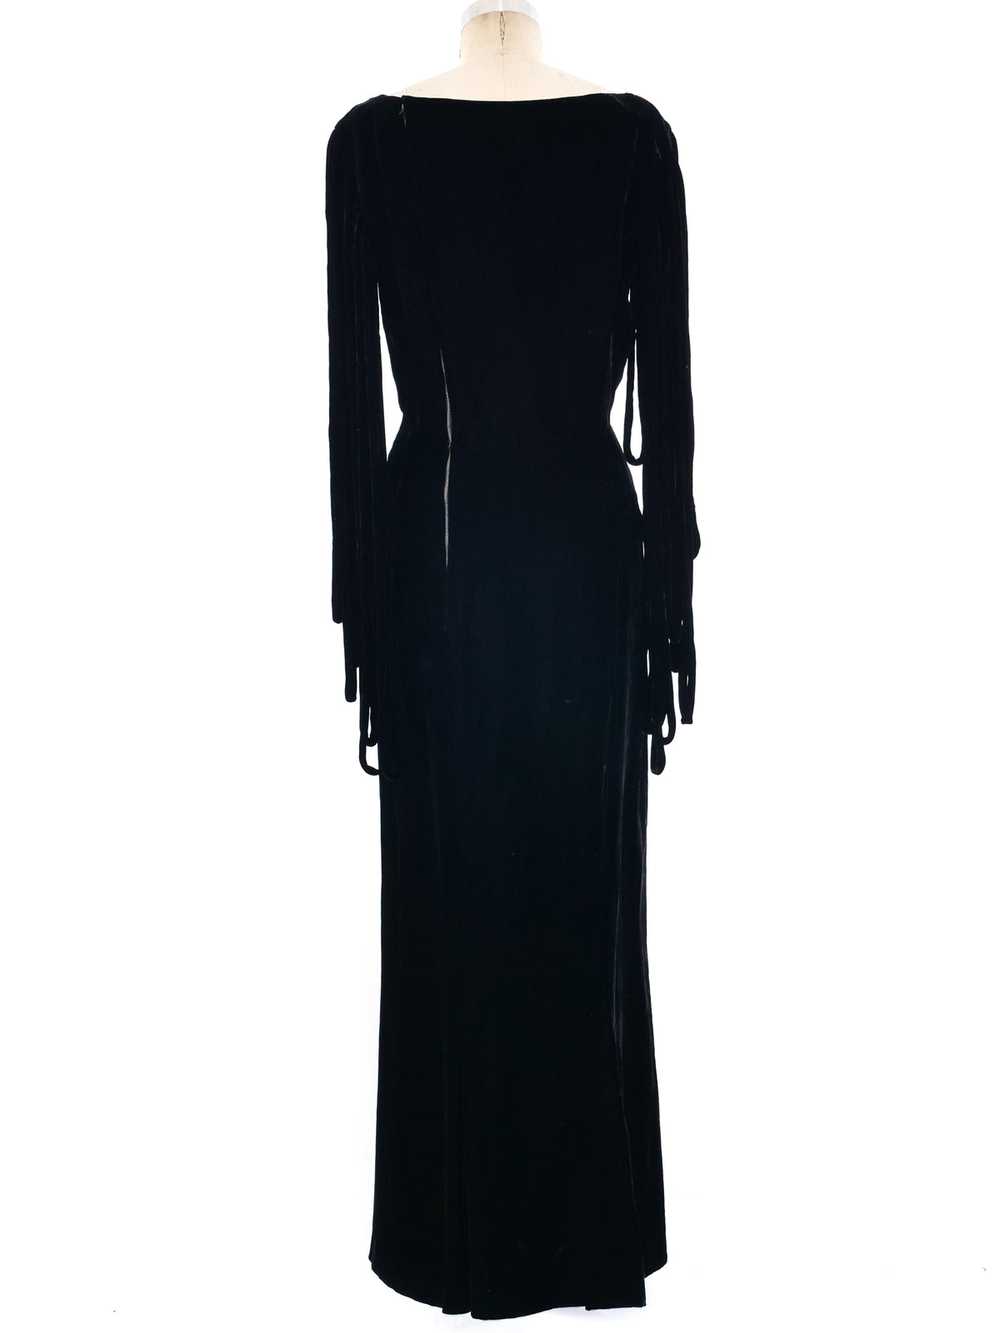 Fringed Velvet Dress - image 4